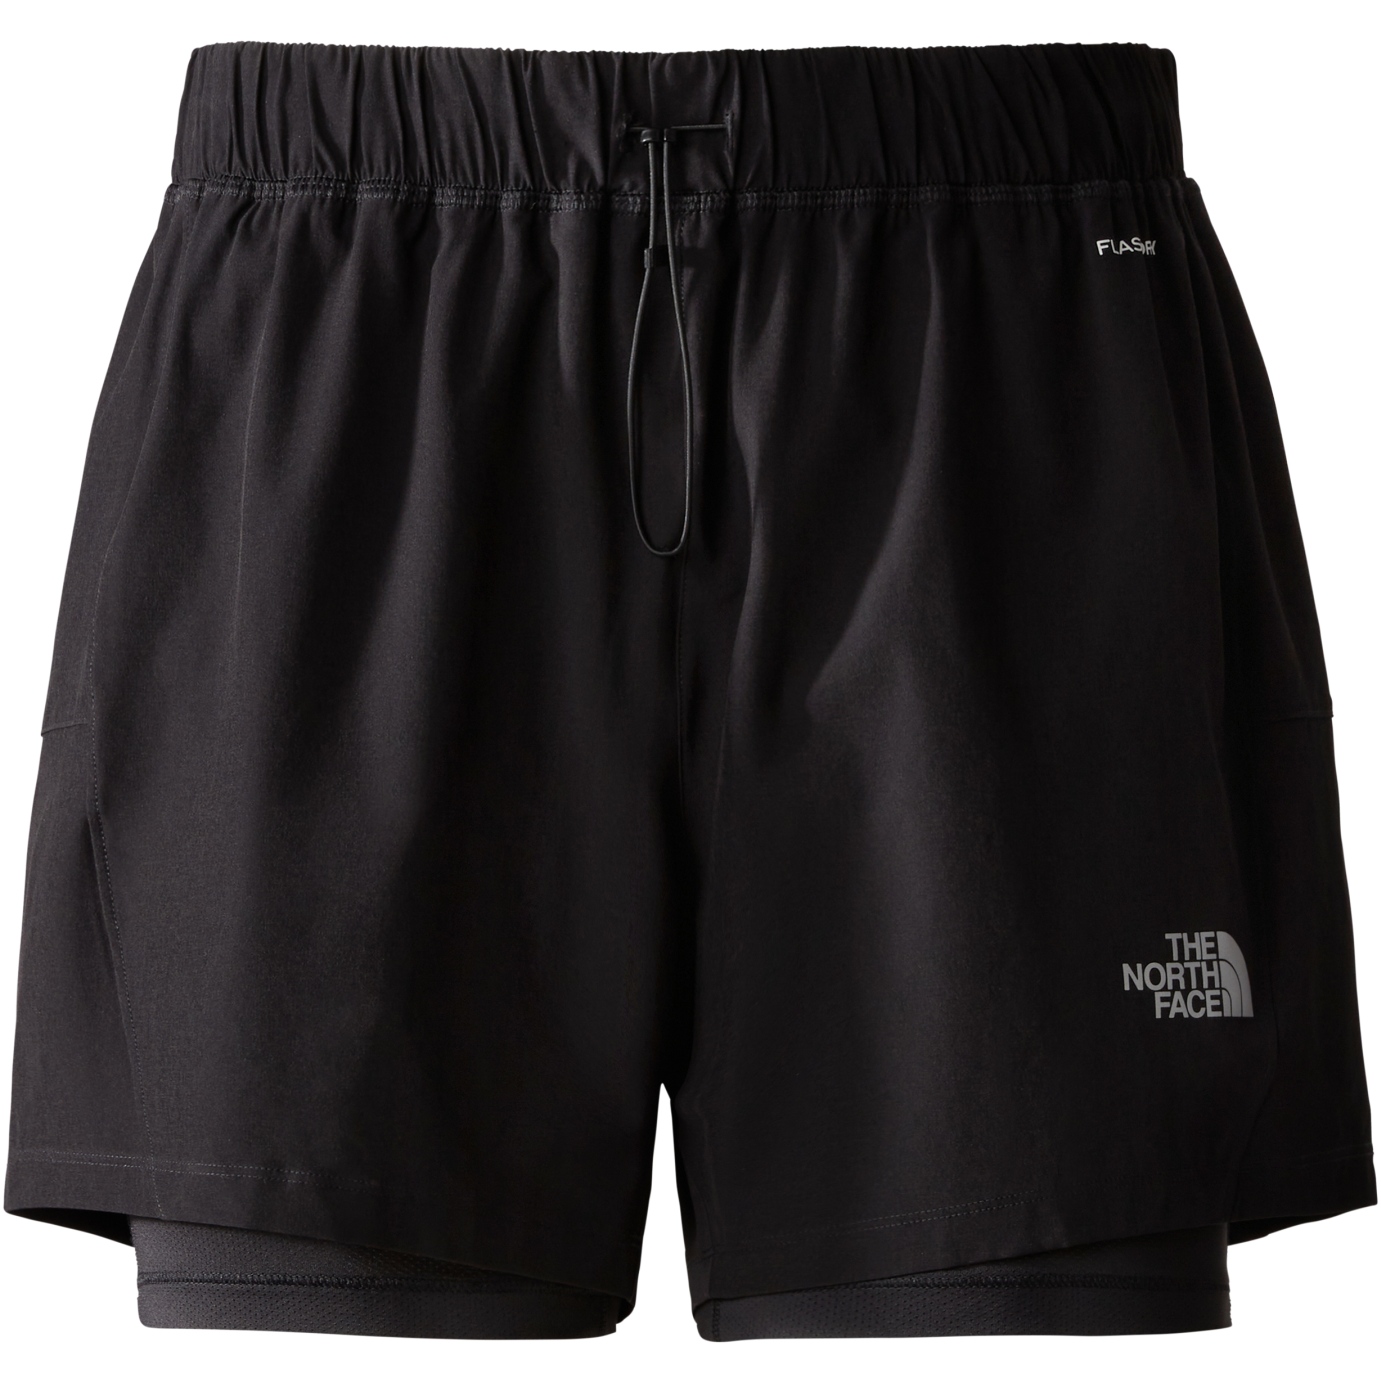 Produktbild von The North Face 2-in-1 Shorts Damen - TNF Black